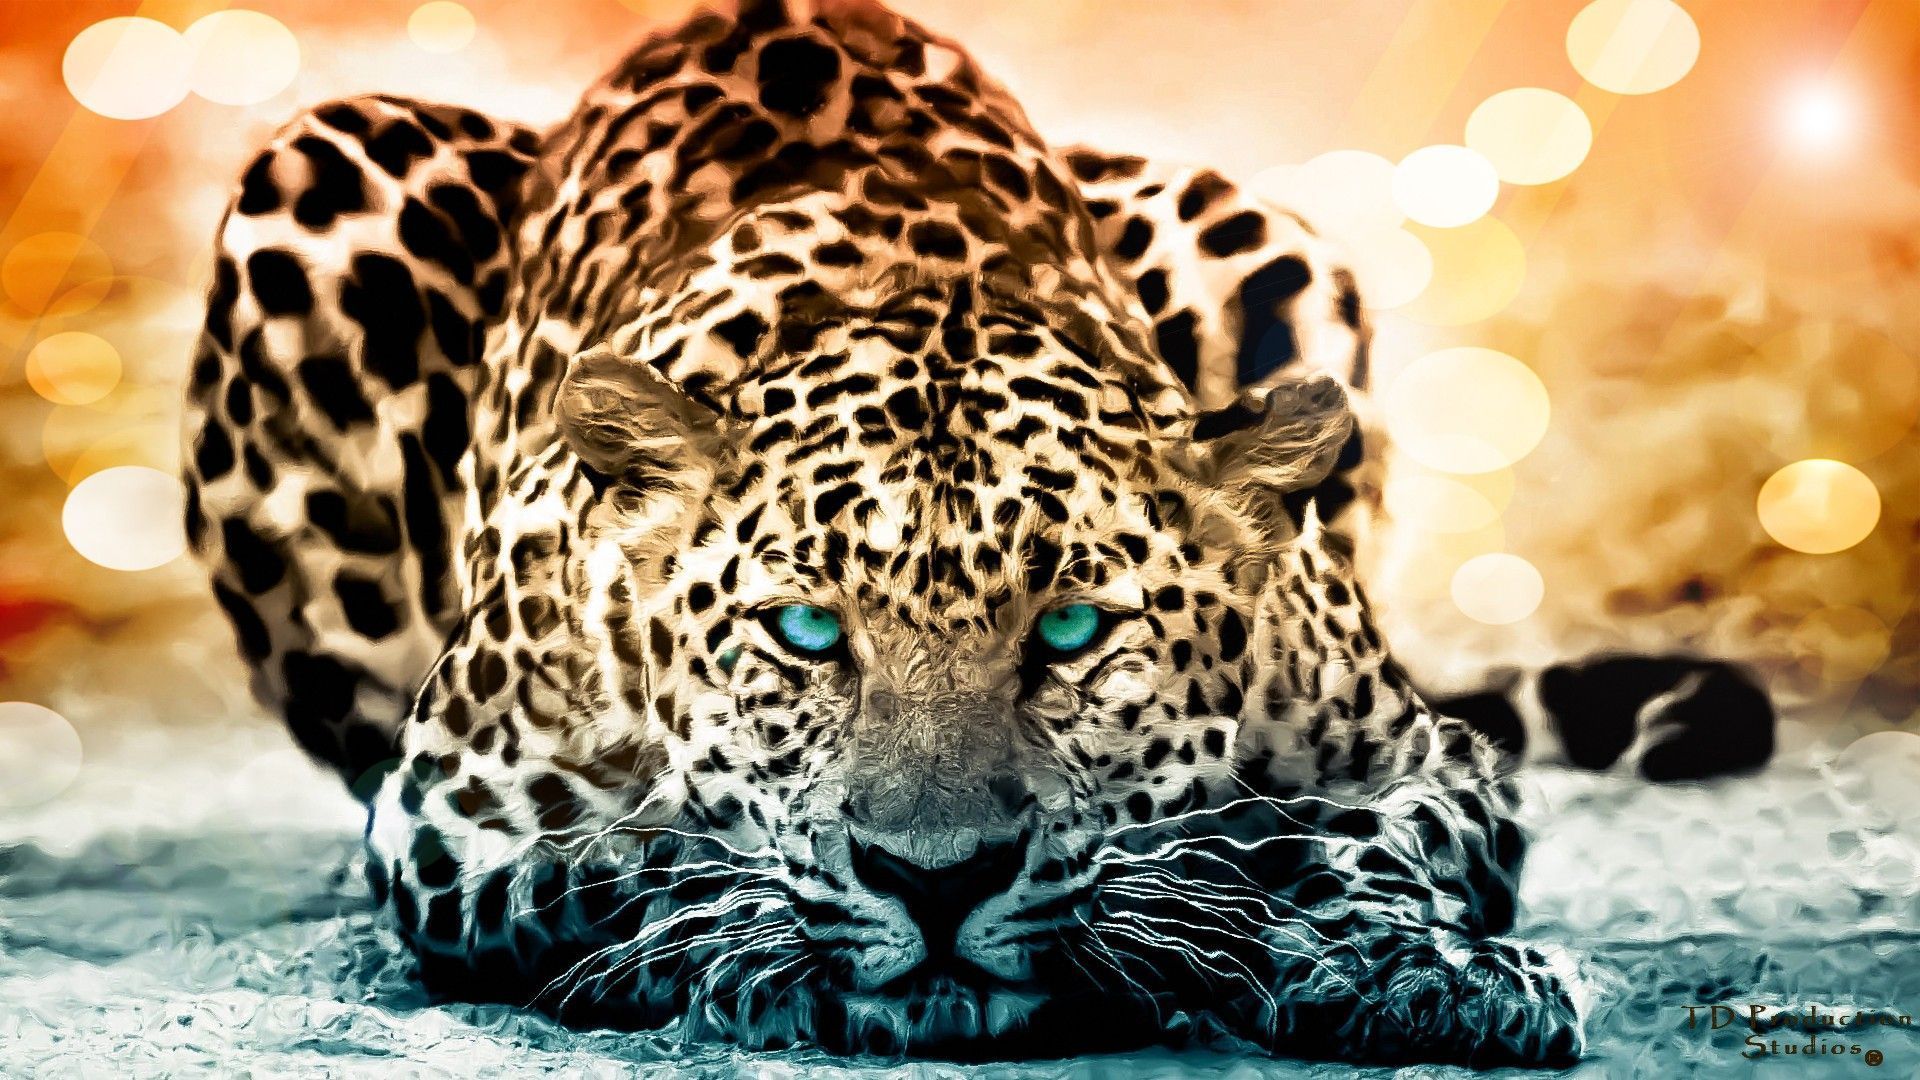 Jaguar Iphone Wallpapers, Jaguar Photo - Jaguar Wallpaper Hd 1080p - HD Wallpaper 